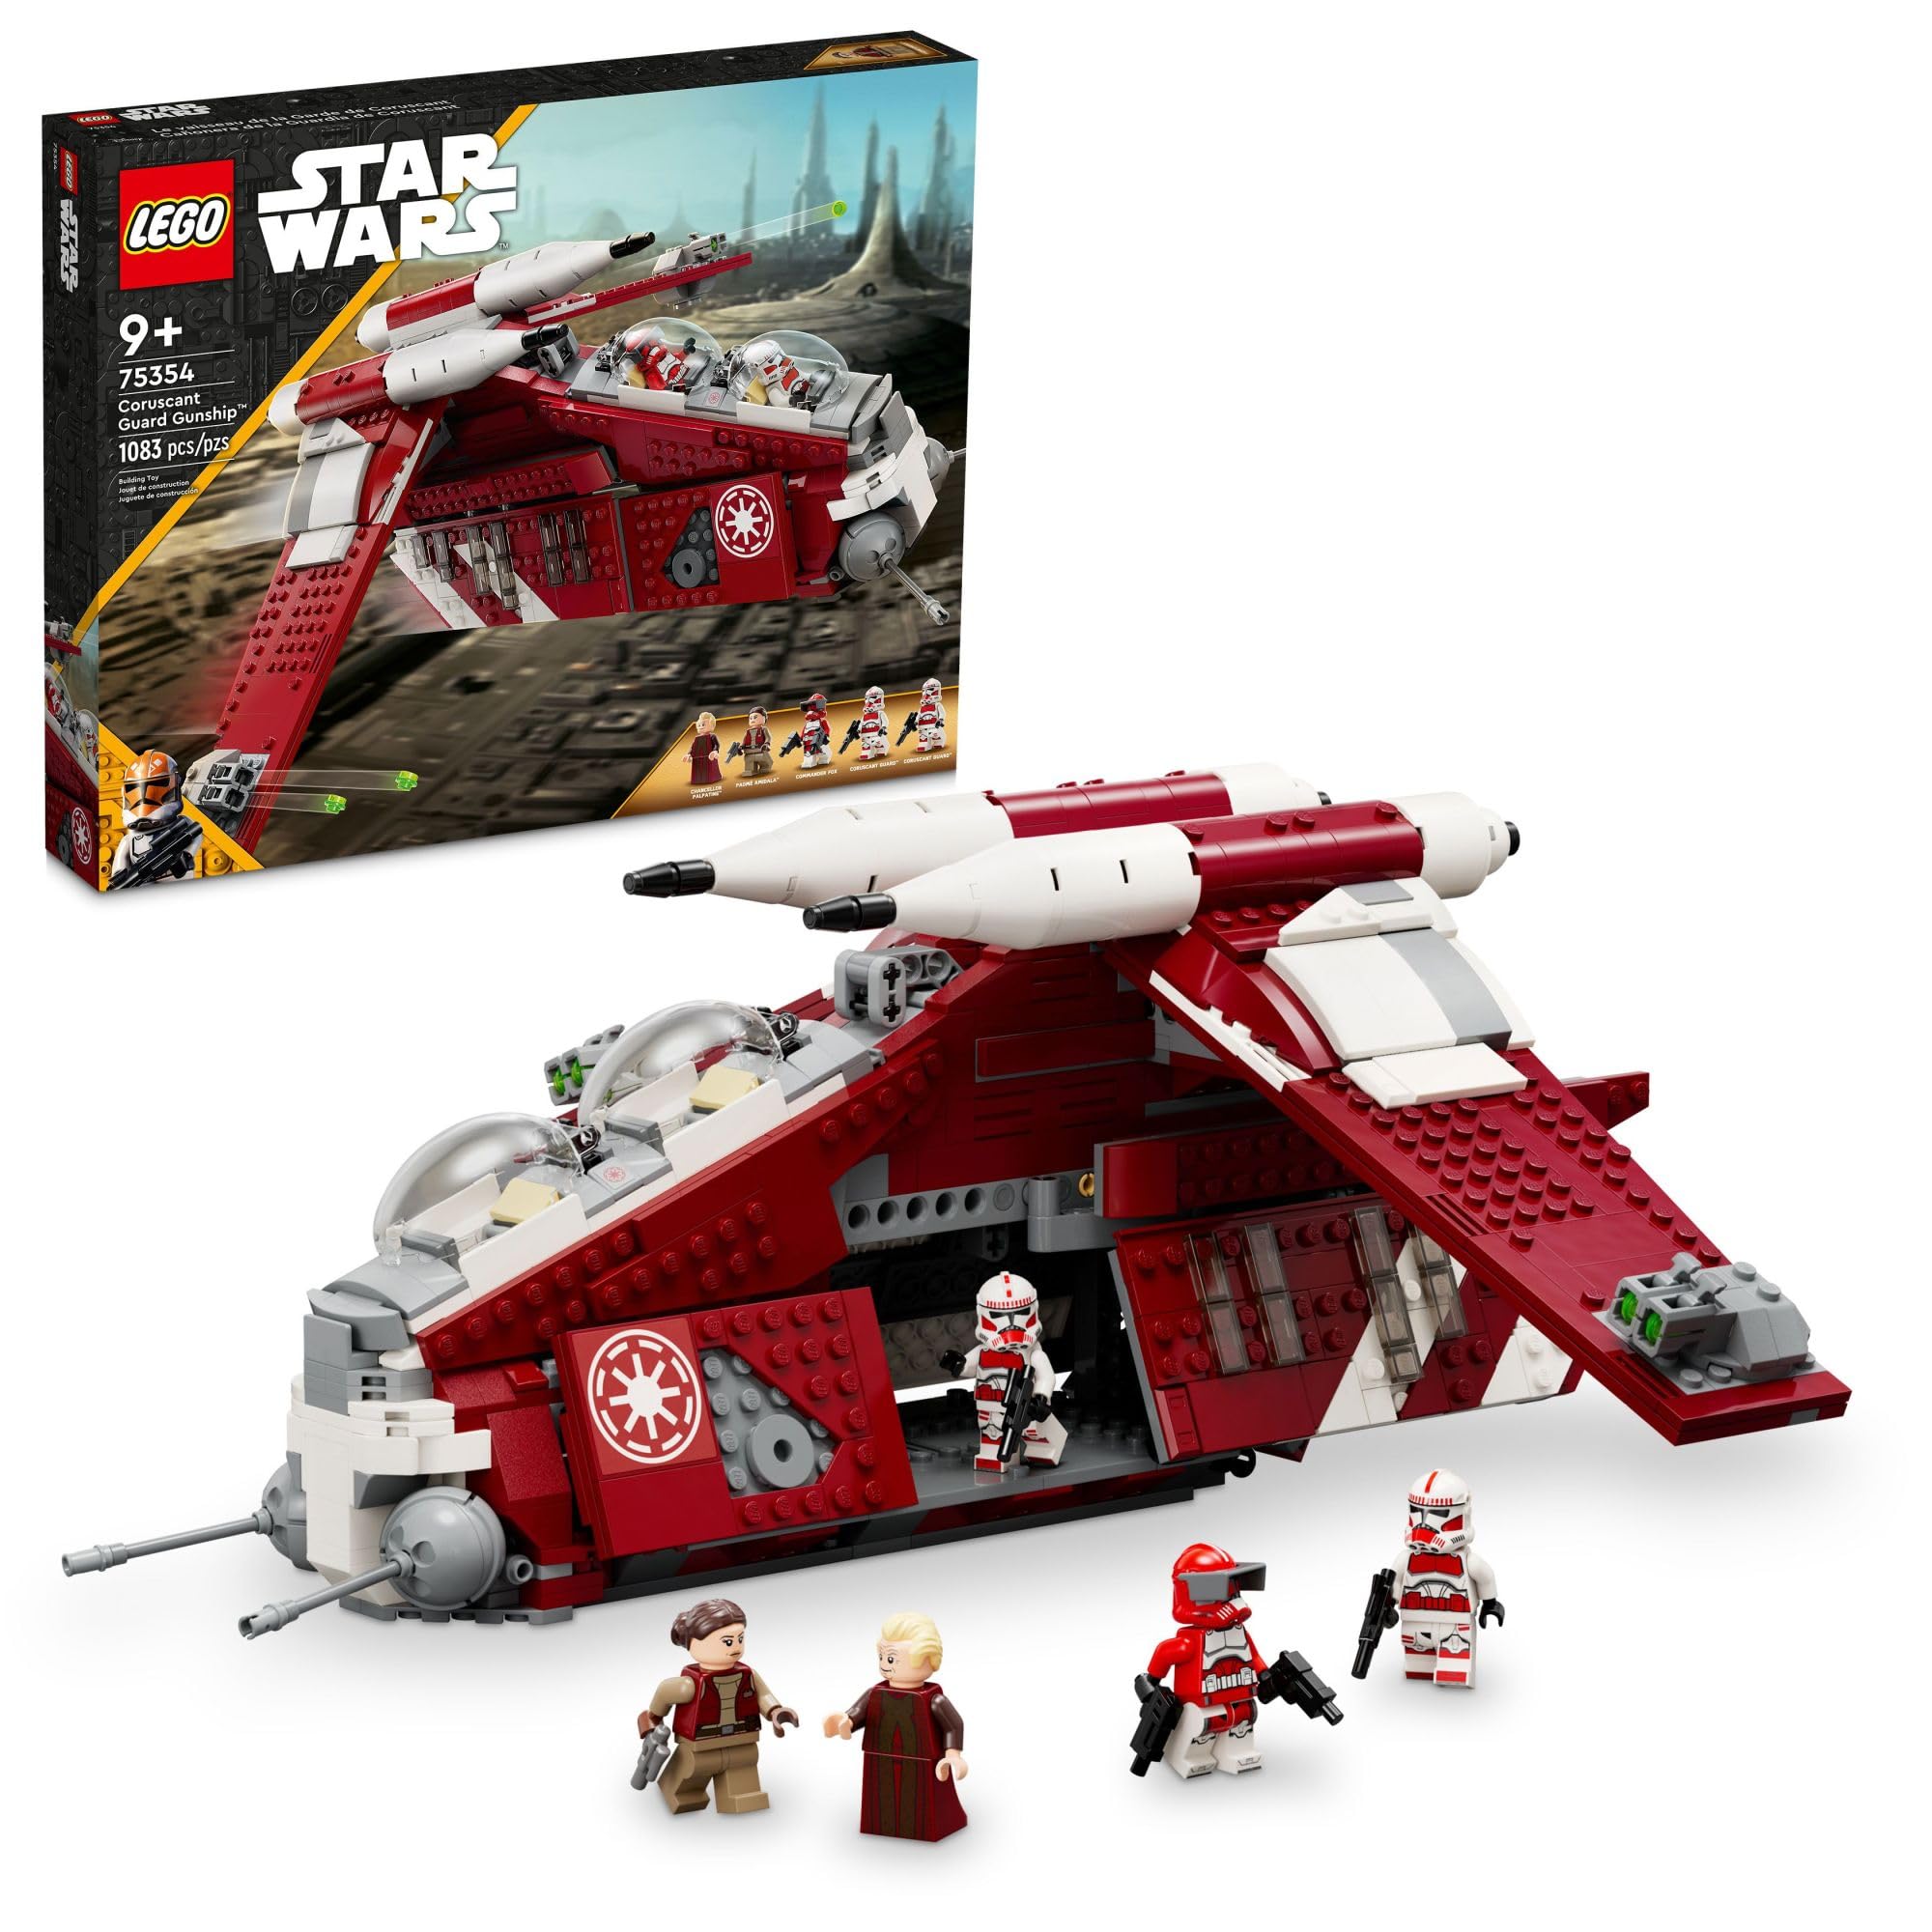 LEGO 星球大战：克隆人战争科洛桑守卫武装直升机 75354 可拼搭玩具，适合 9 岁儿童，适合送给帕尔帕廷总理、帕德梅和 3 个士兵小人仔等创意粉丝